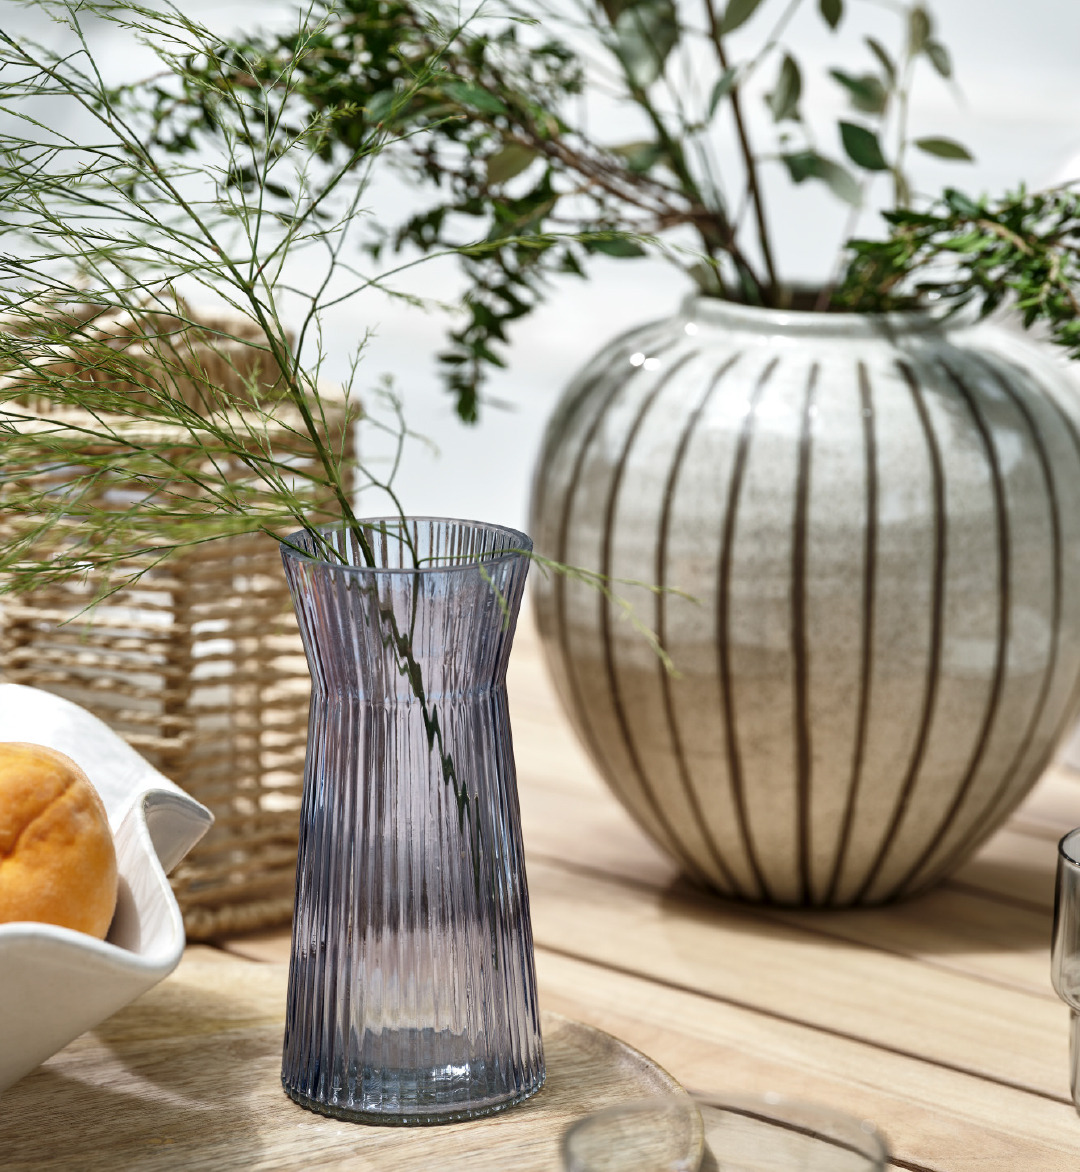 Vasen auf einem Gartentisch